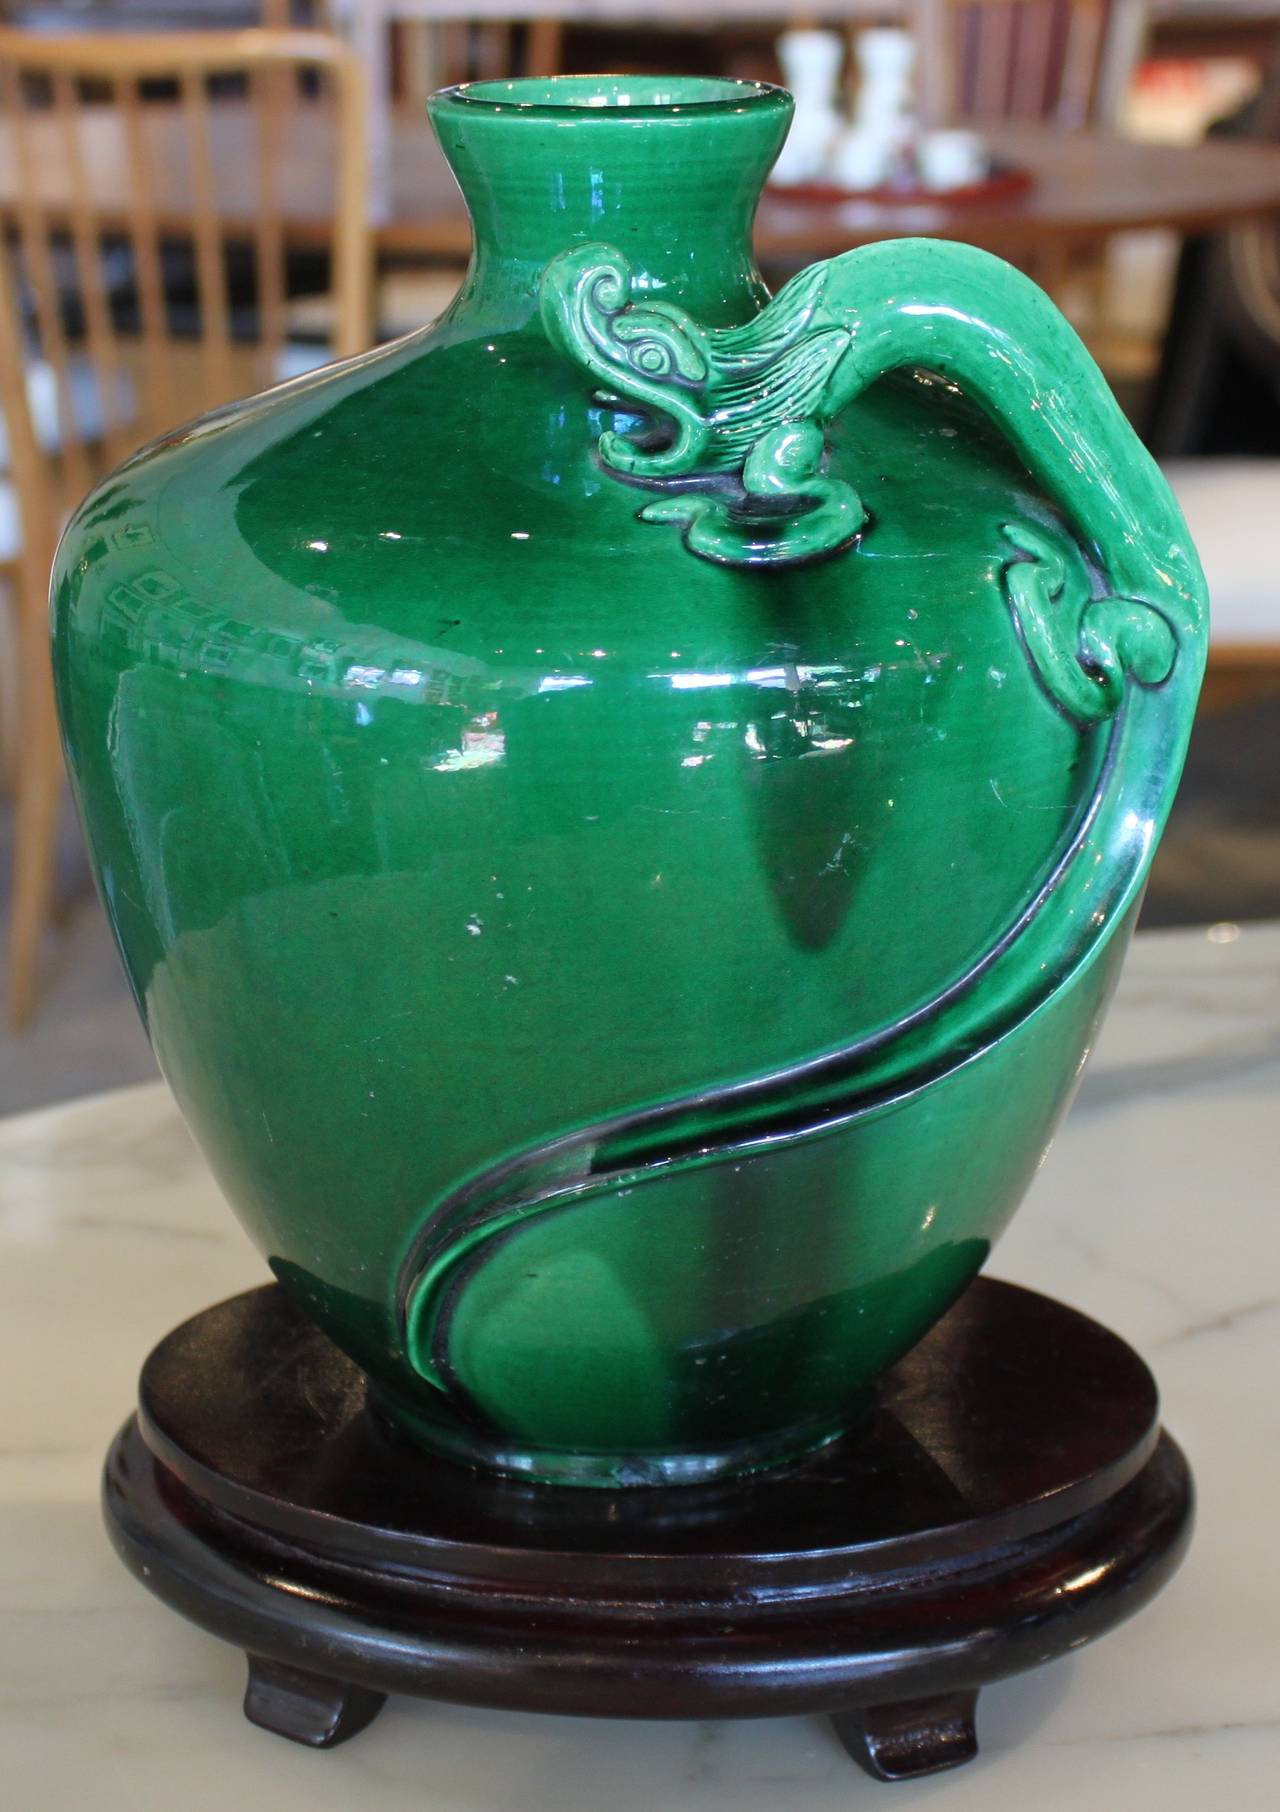 Vintage Awaji ceramic vase with dragon motif.